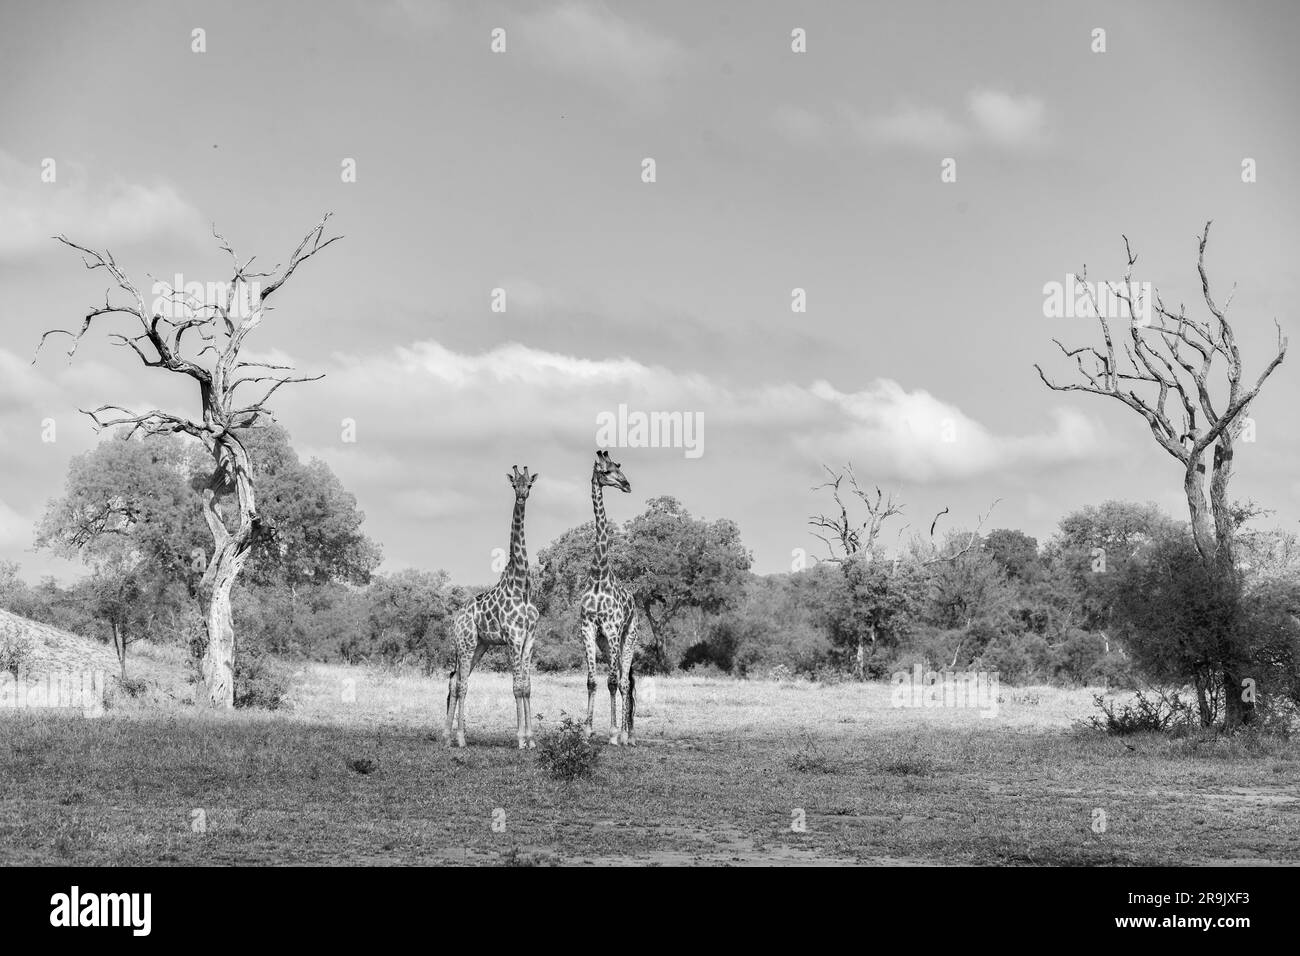 Zwei Giraffen, Giraffa, stehen zusammen auf einer Lichtung, zwischen Bleiholzbäumen, in Schwarz und Weiß. Stockfoto